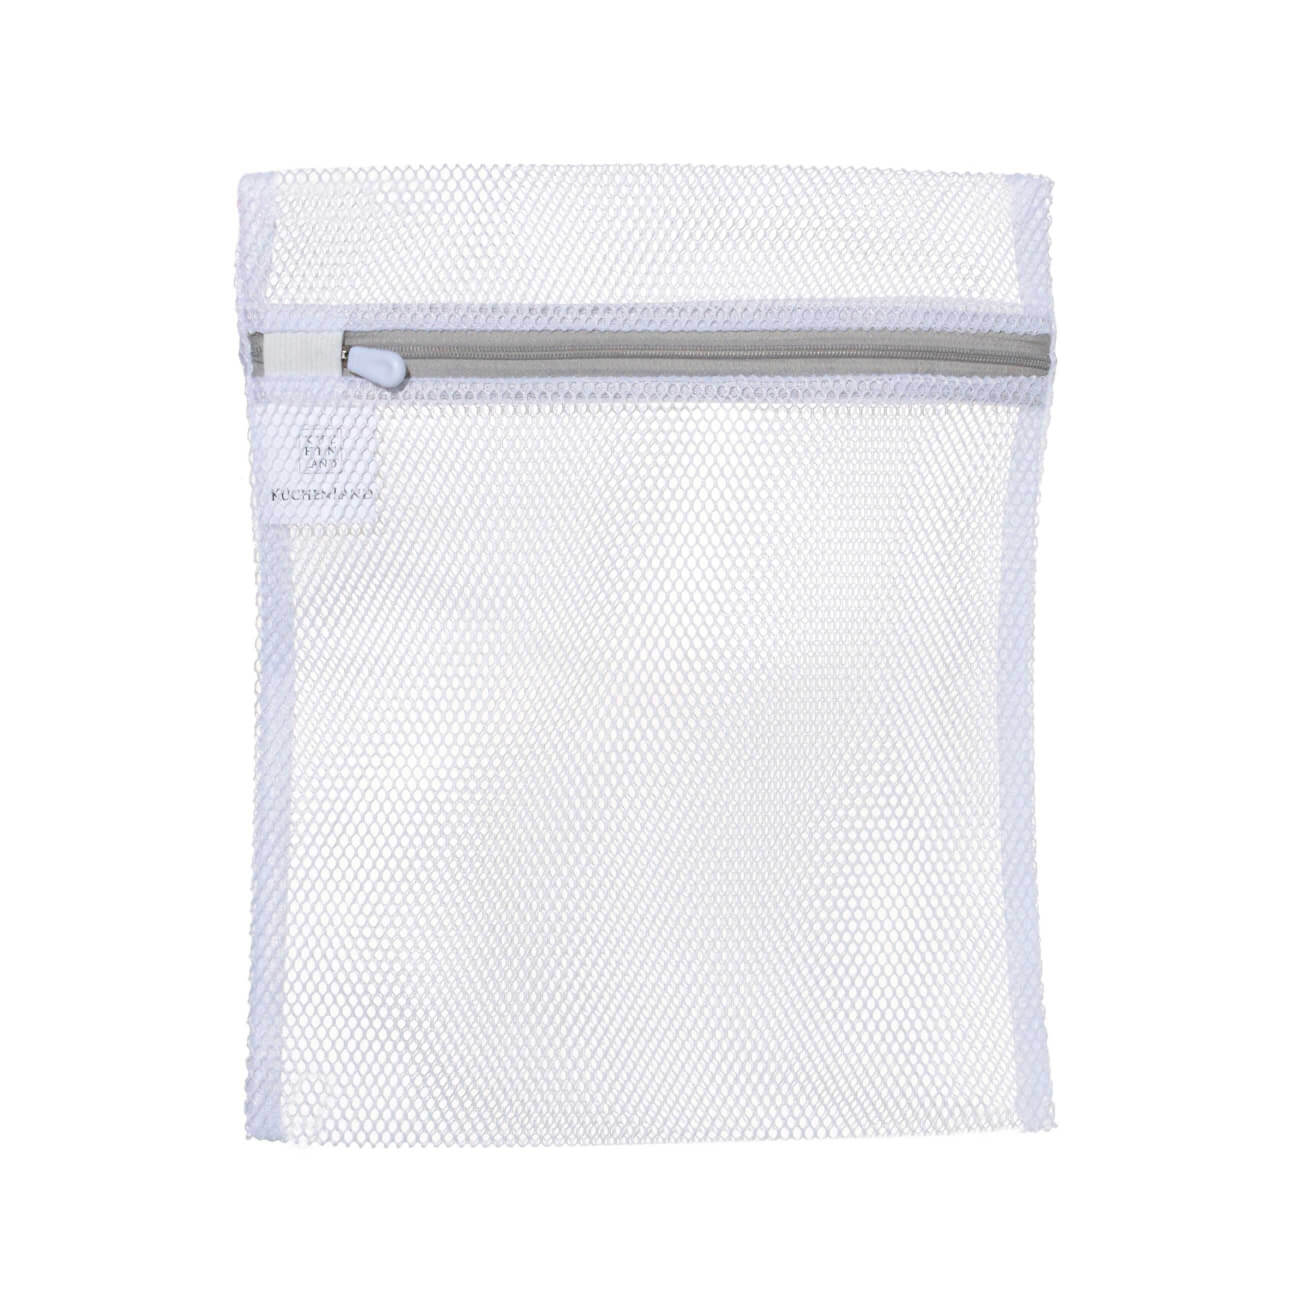 Мешок для стирки нижнего белья, 25х30 см, полиэстер, бело-серый, Safety мешок сетка для стирки деликатных вещей unistor